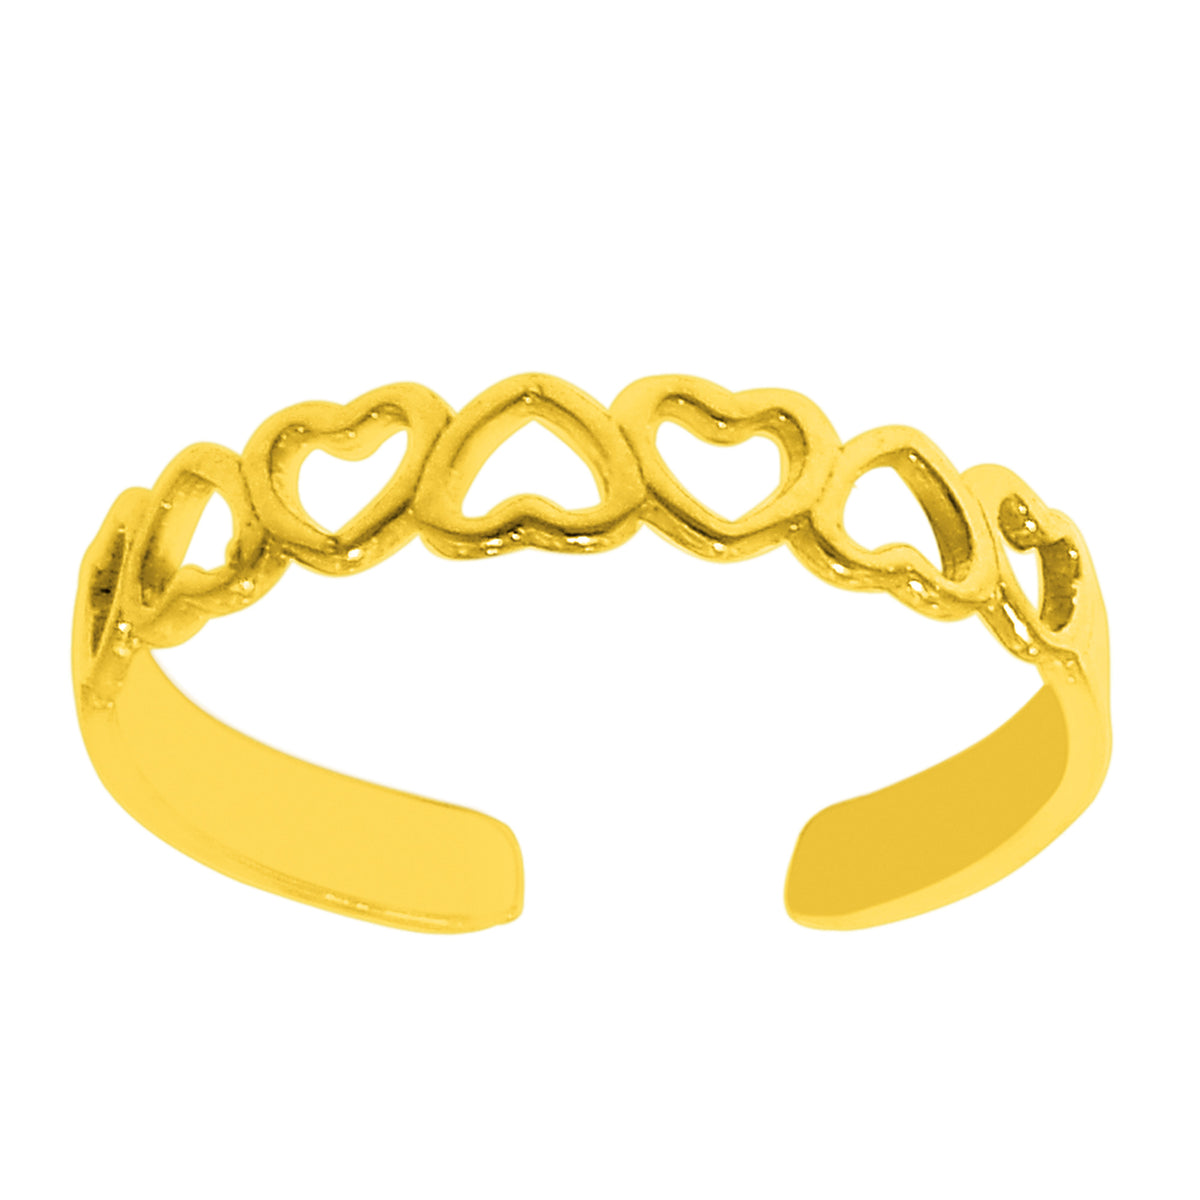 Anello da punta regolabile in oro giallo 14 carati con cuori multipli lucidi, gioielli di design per uomini e donne